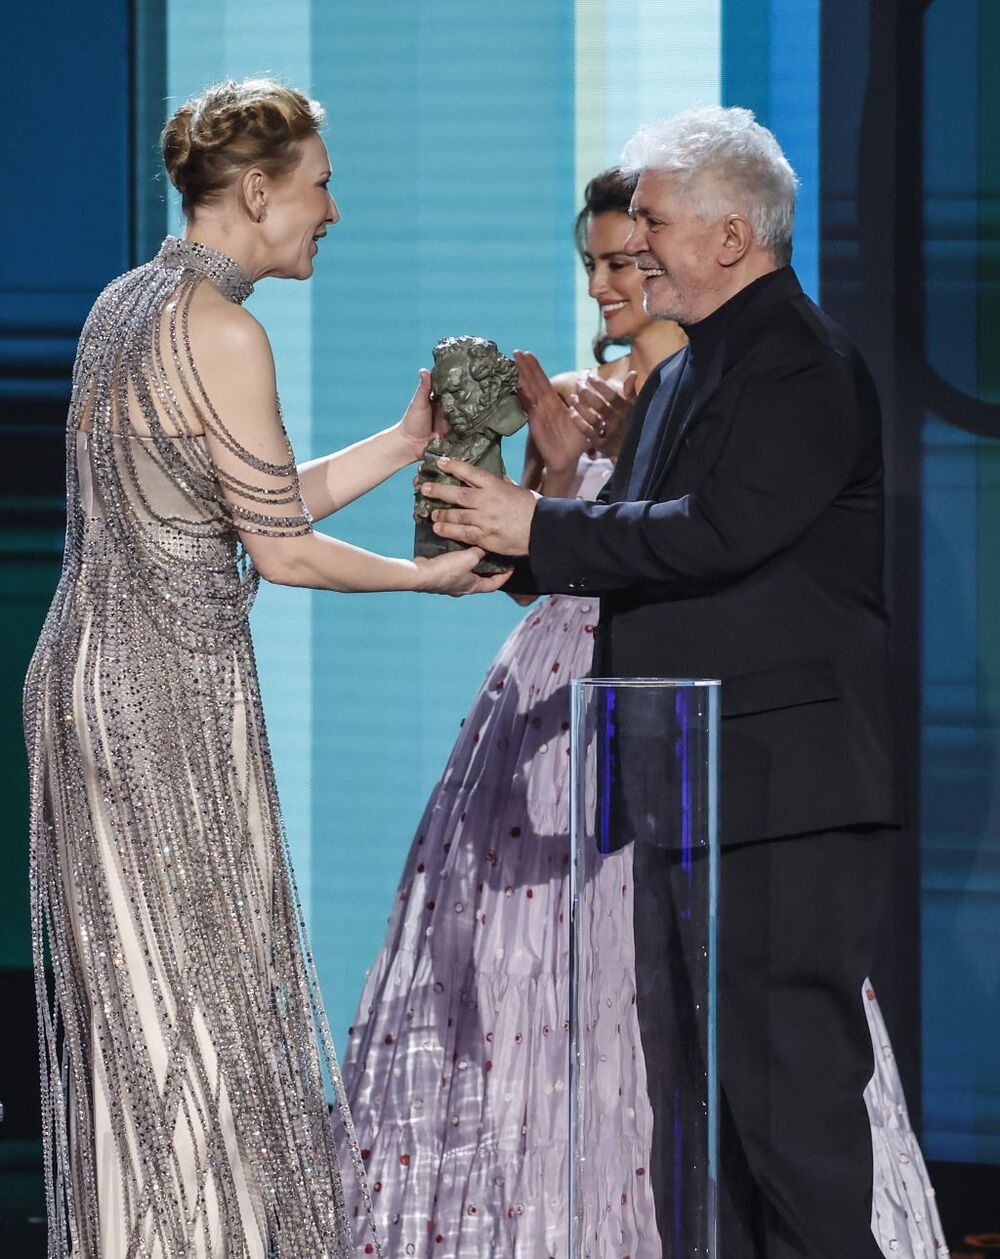 La actriz Cate Blanchett recibe el Goya Internacional de manos de la actriz Penélope Cruz y del director Pedro Almodóvar  / ROBER SOLSONA